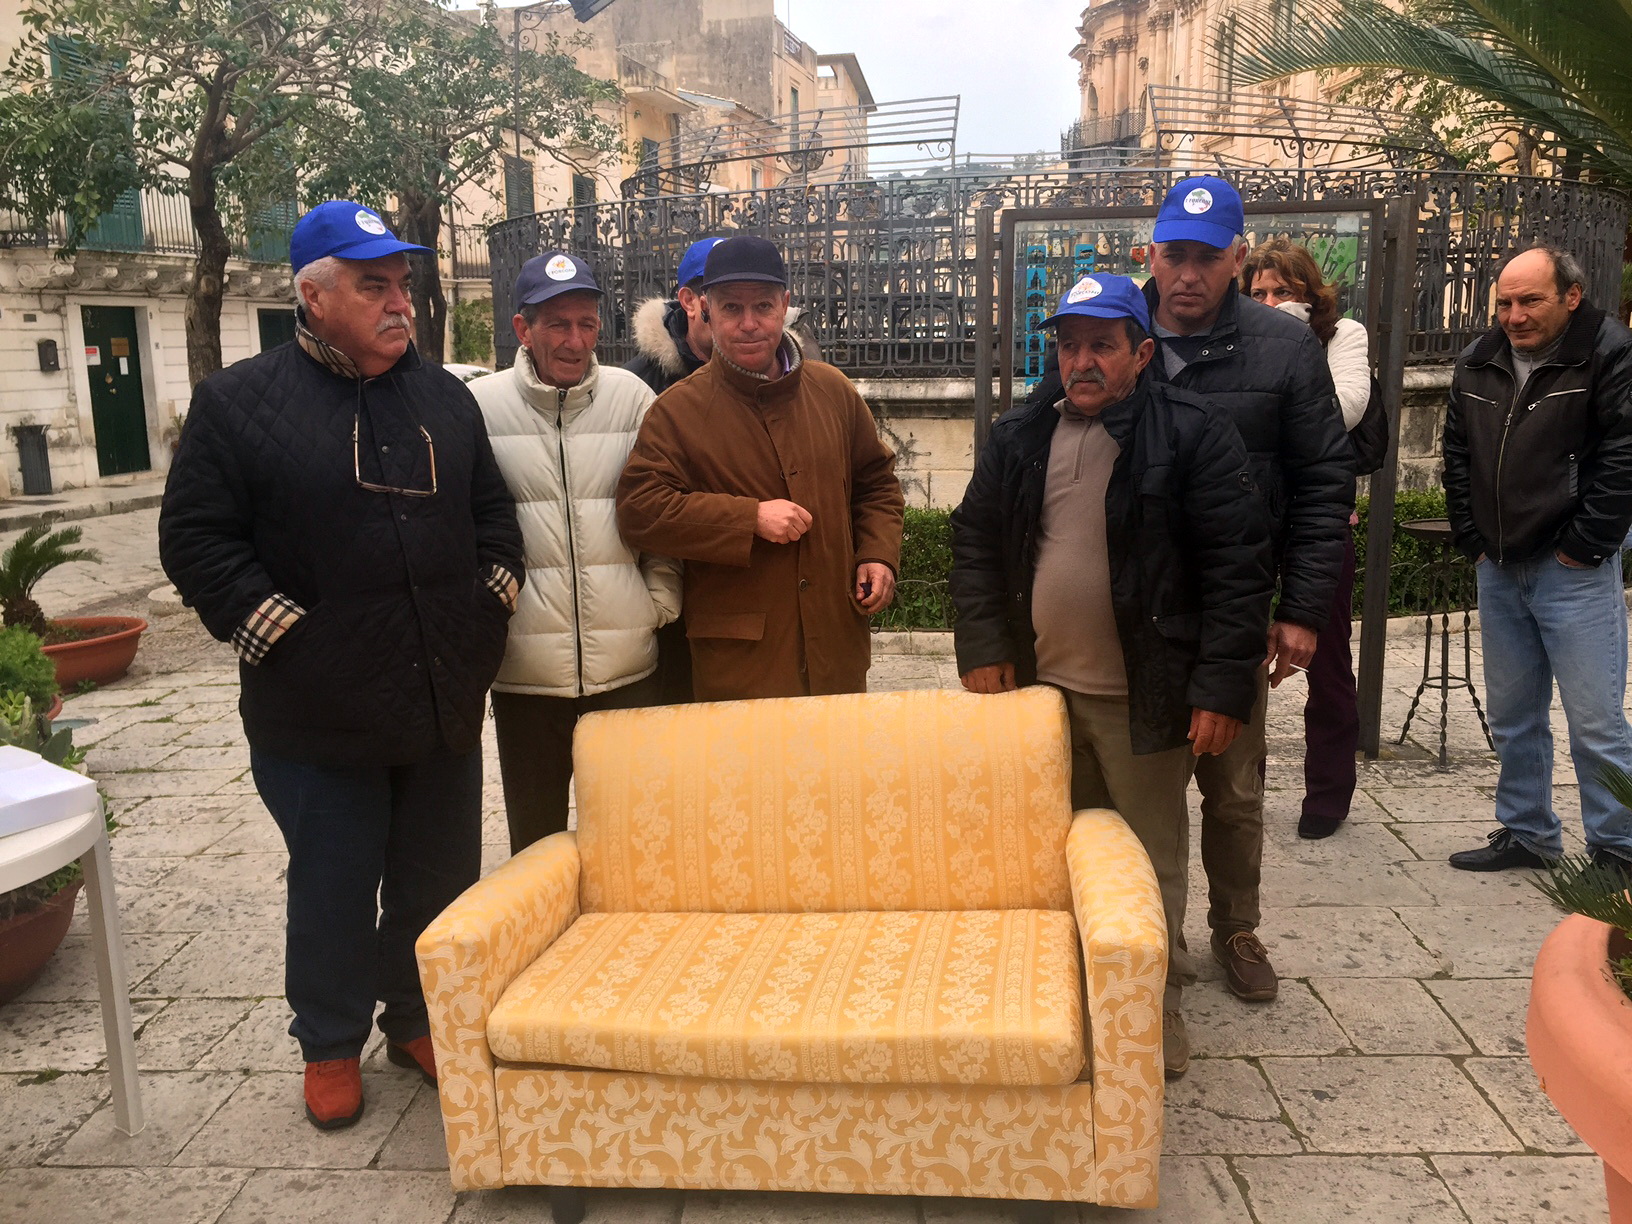  Scicli – Riceve lo sfratto e porta i mobili in piazza davanti al municipio: la protesta di un imprenditore agricolo